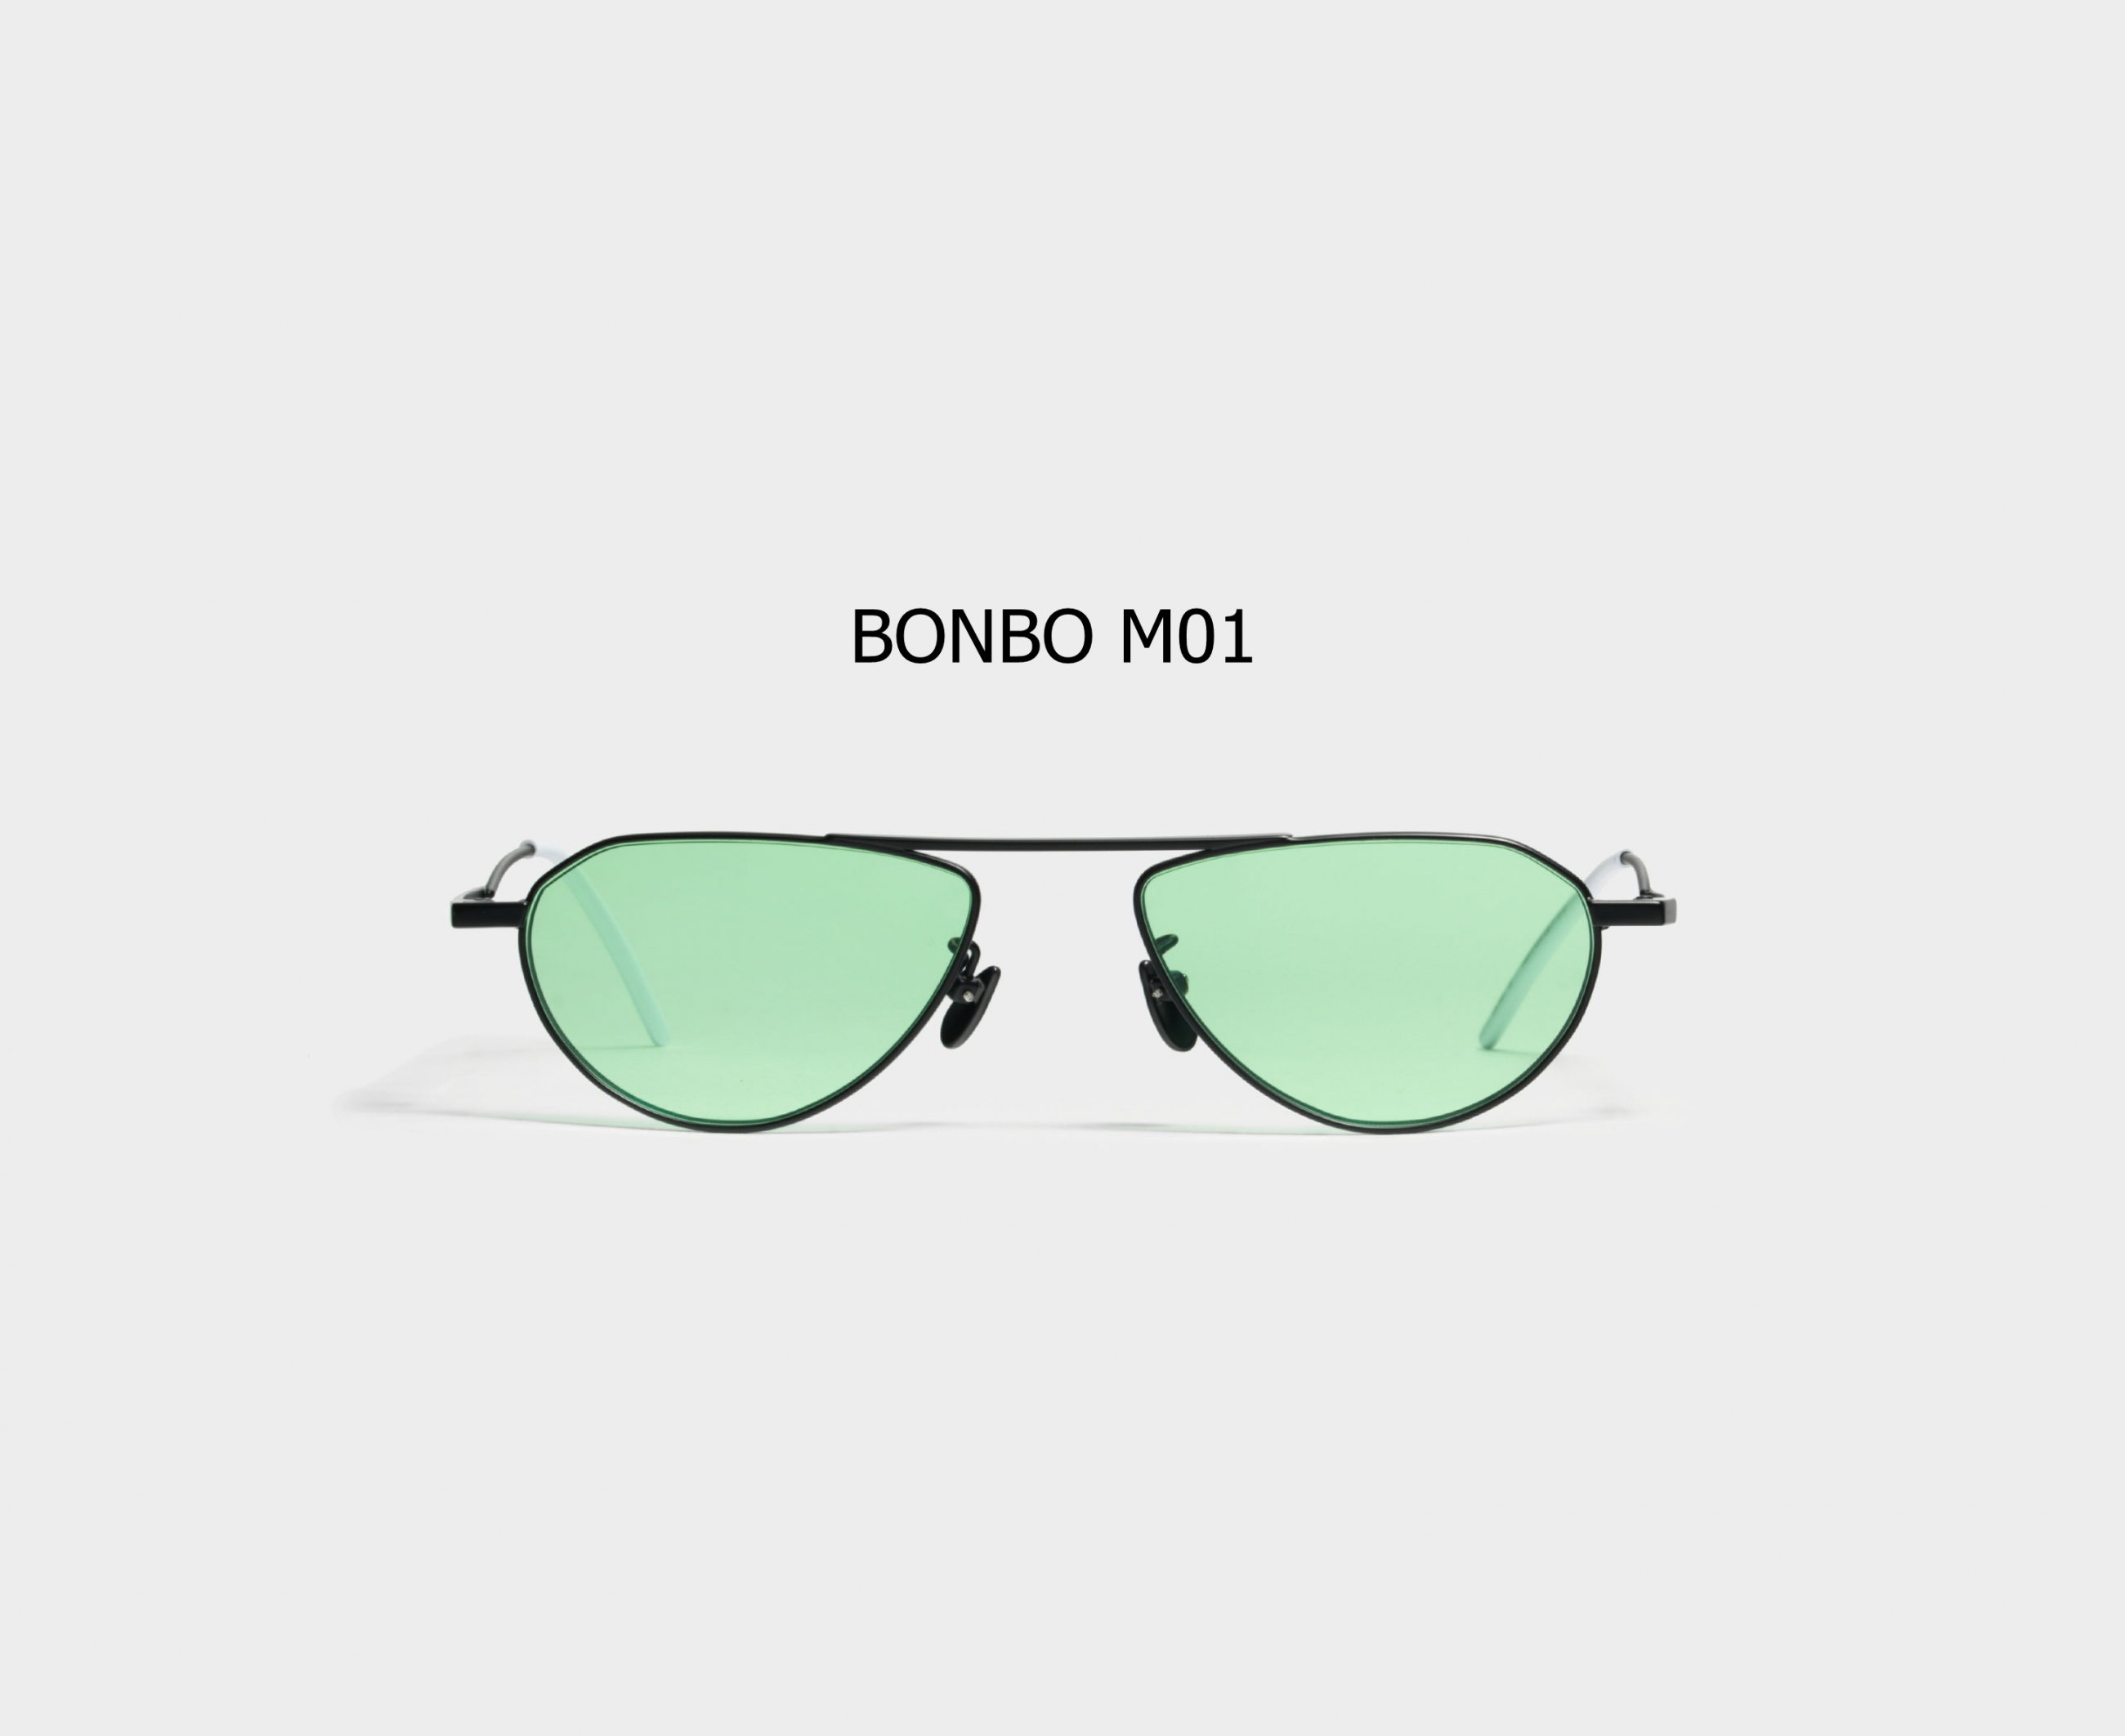 BONBO M01 - KÍNH GENTLE MONSTER CHÍNH HÃNG